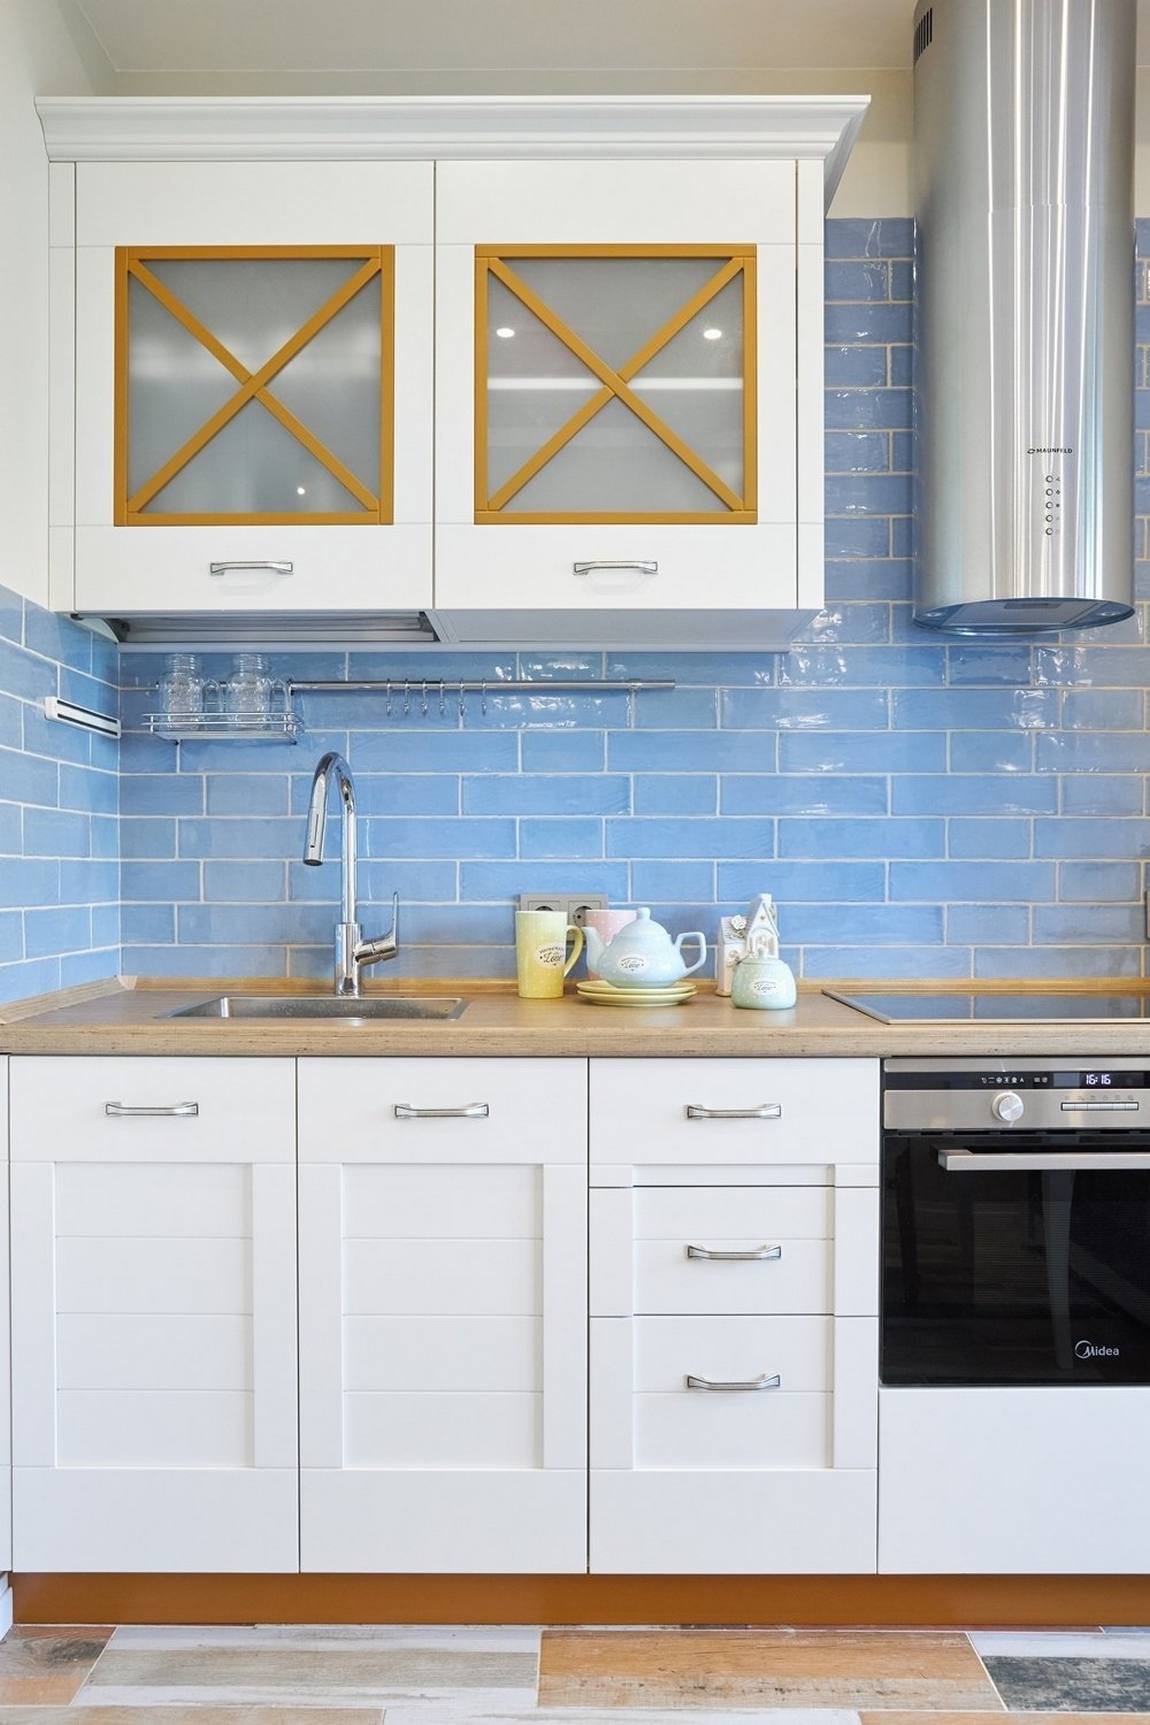 Khu vực backsplash của phòng bếp được ốp gạch màu xanh lam theo kiểu gạch thẻ metro có lớp hoàn thiện sáng bóng, tạo sức hút về màu sắc cũng như phản chiếu ánh sáng lên bề mặt bóng loáng.